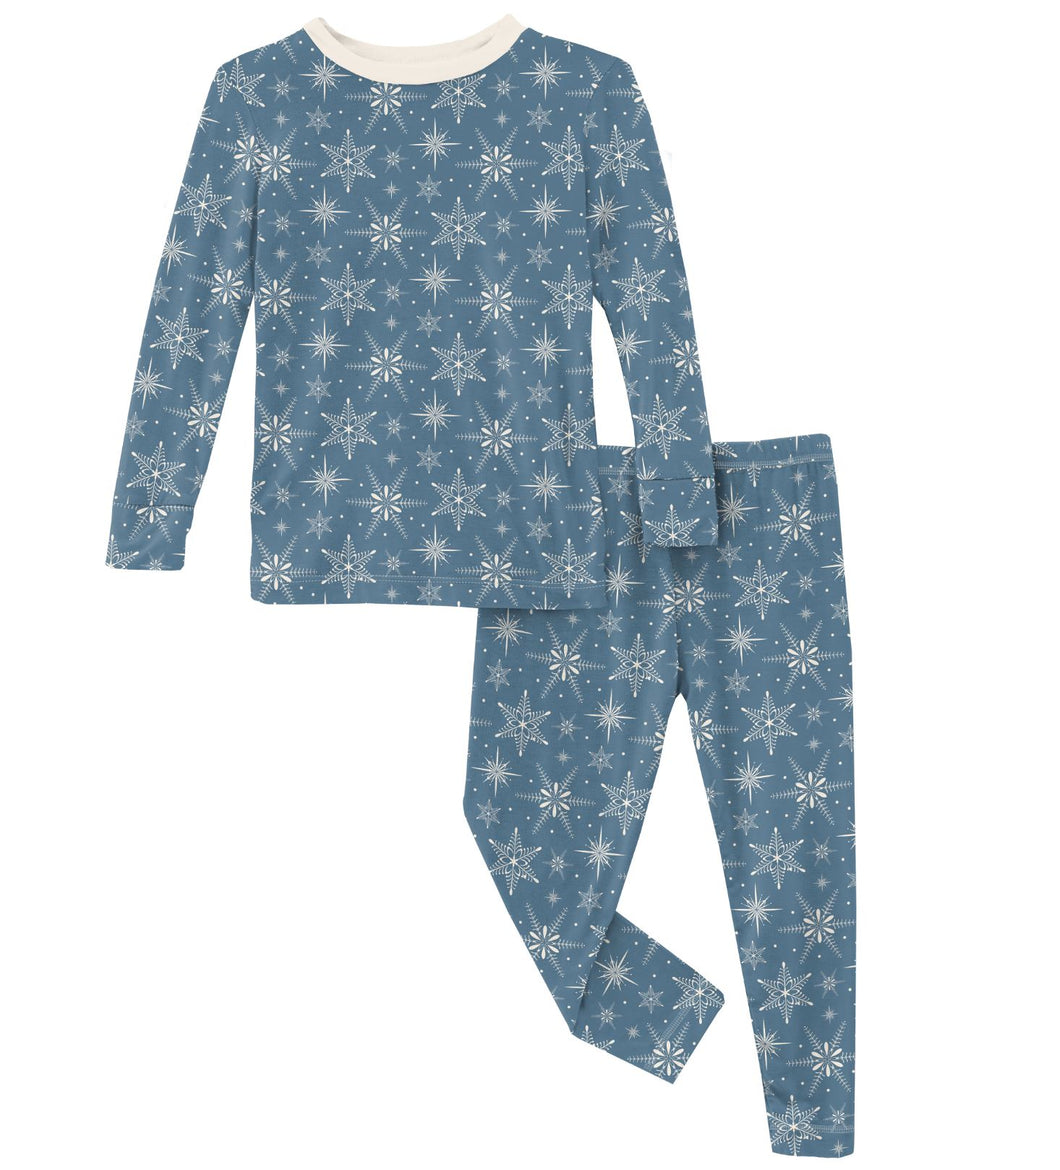 Parisian Blue Snowflakes Pajamas 140 BOYS APPAREL 2-8 Kickee Pants 2T 